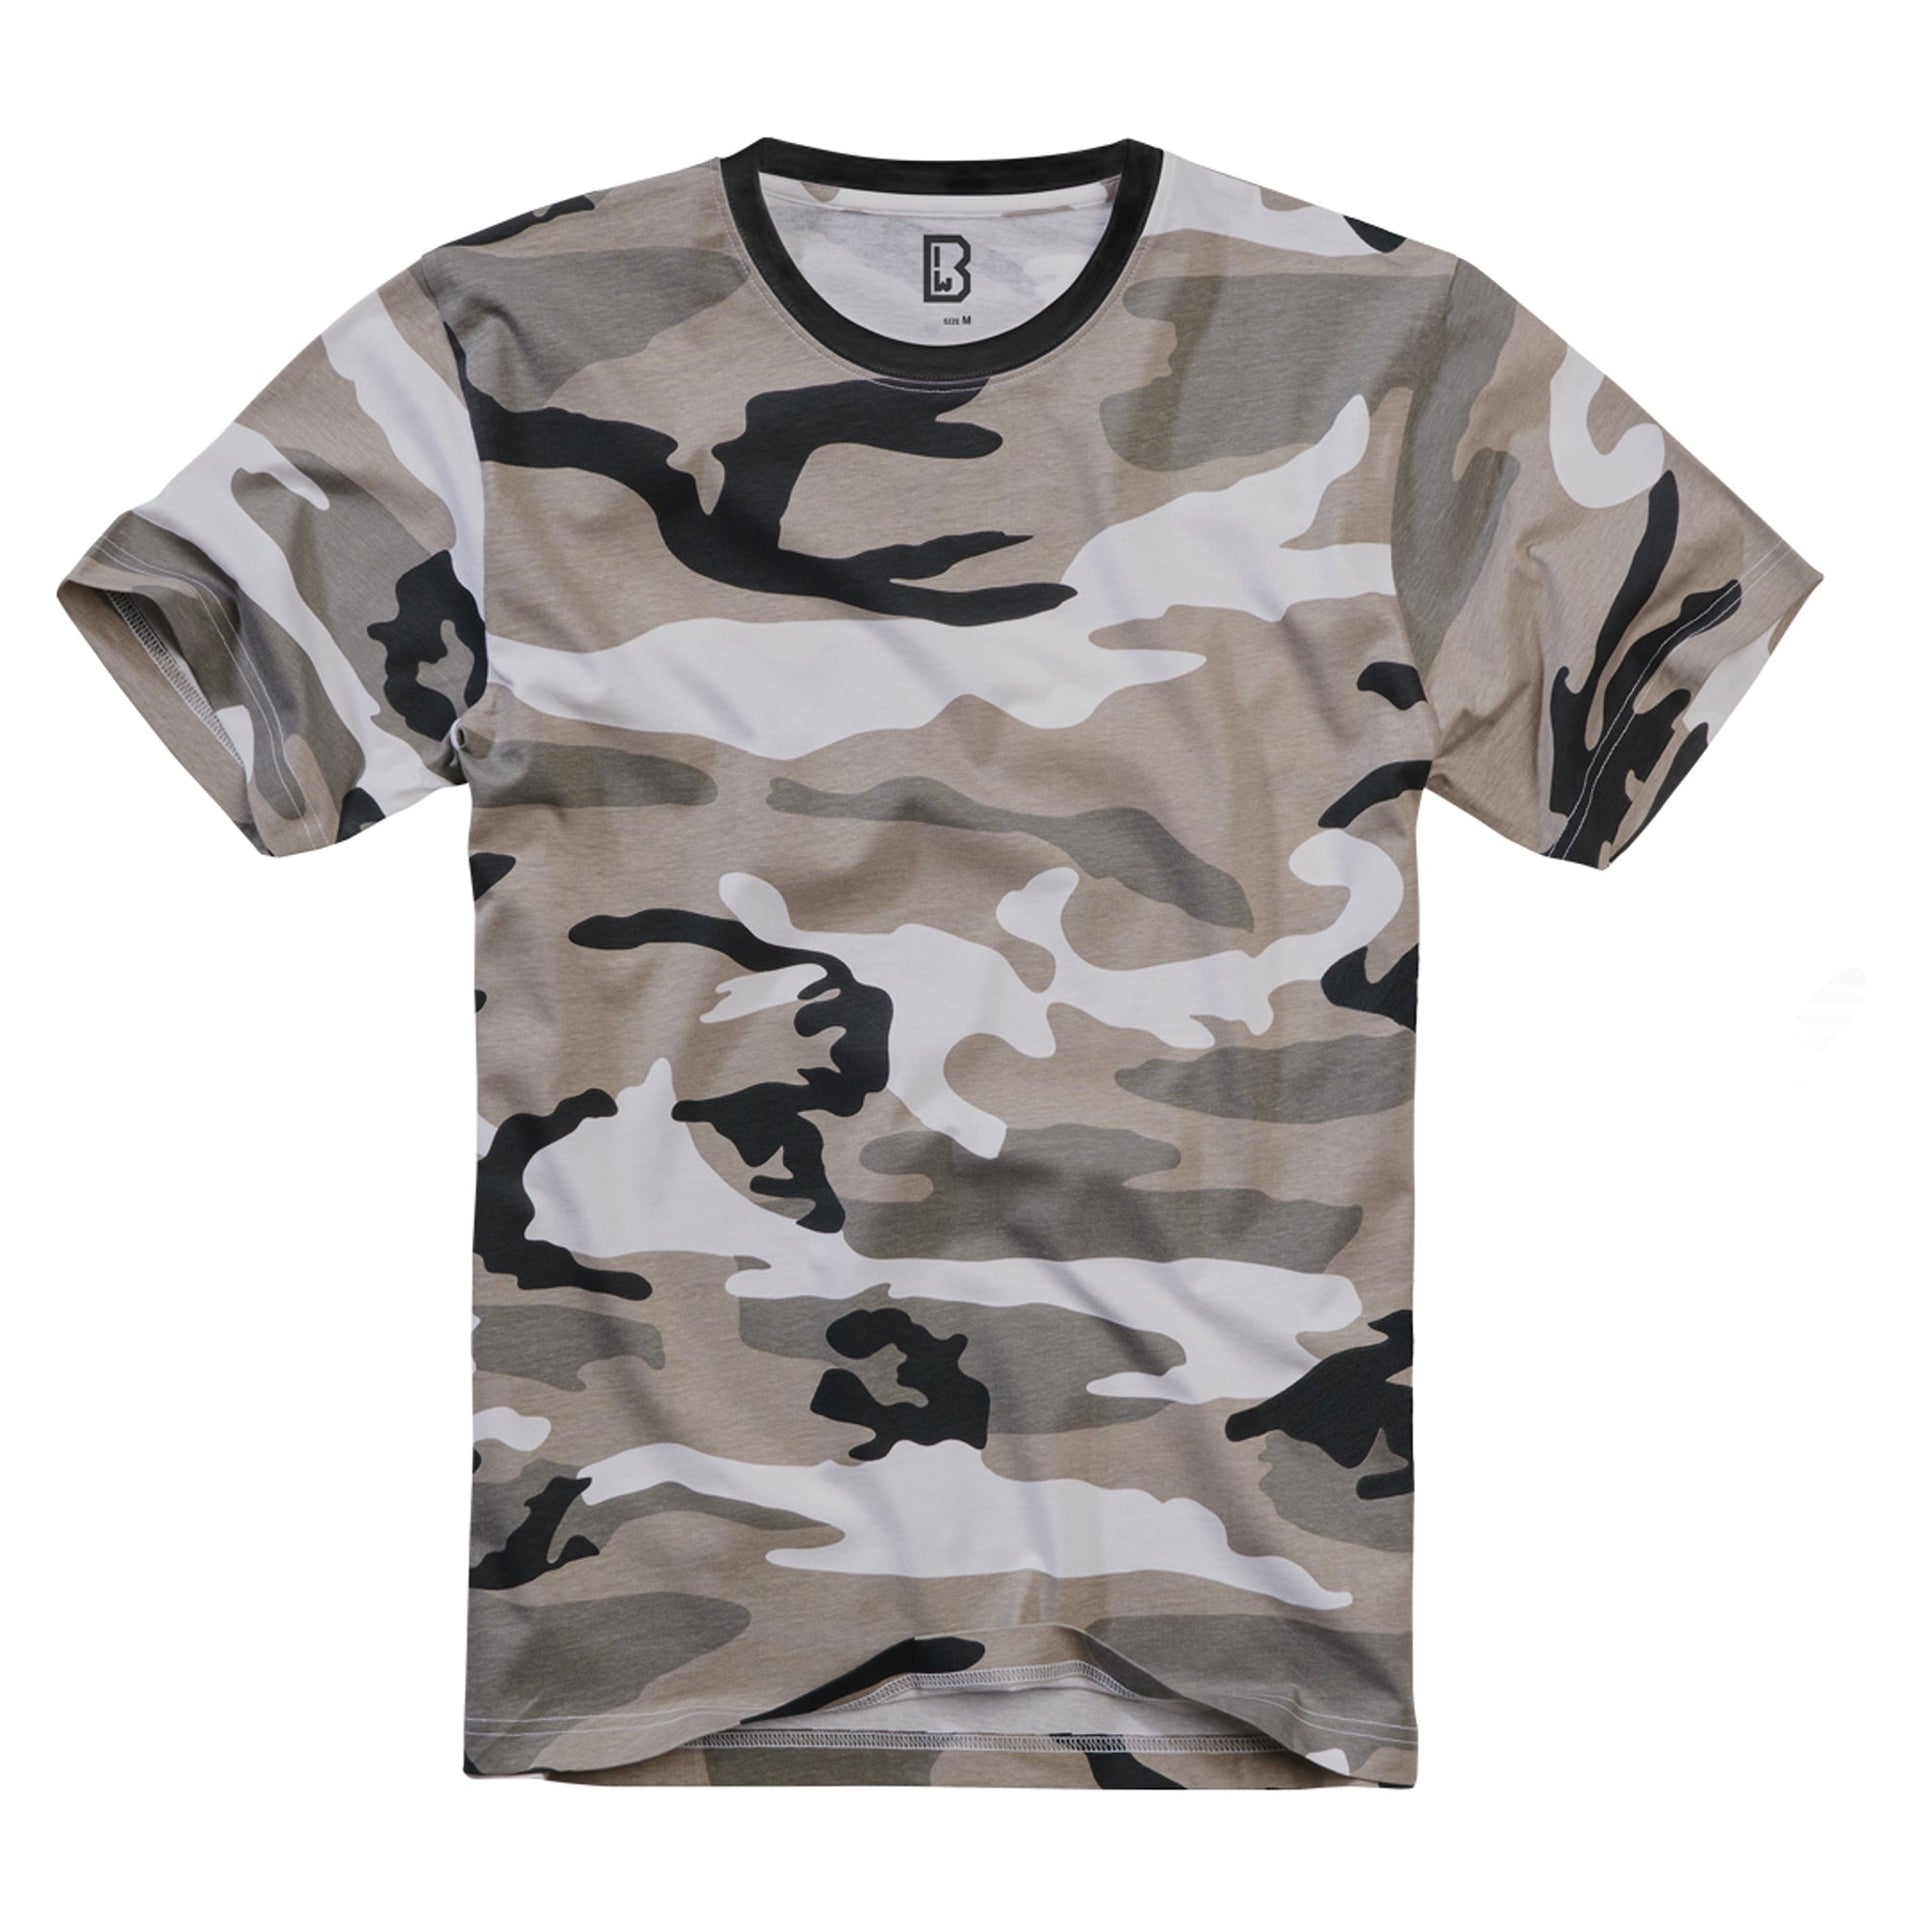 T-Shirt 3-color desert